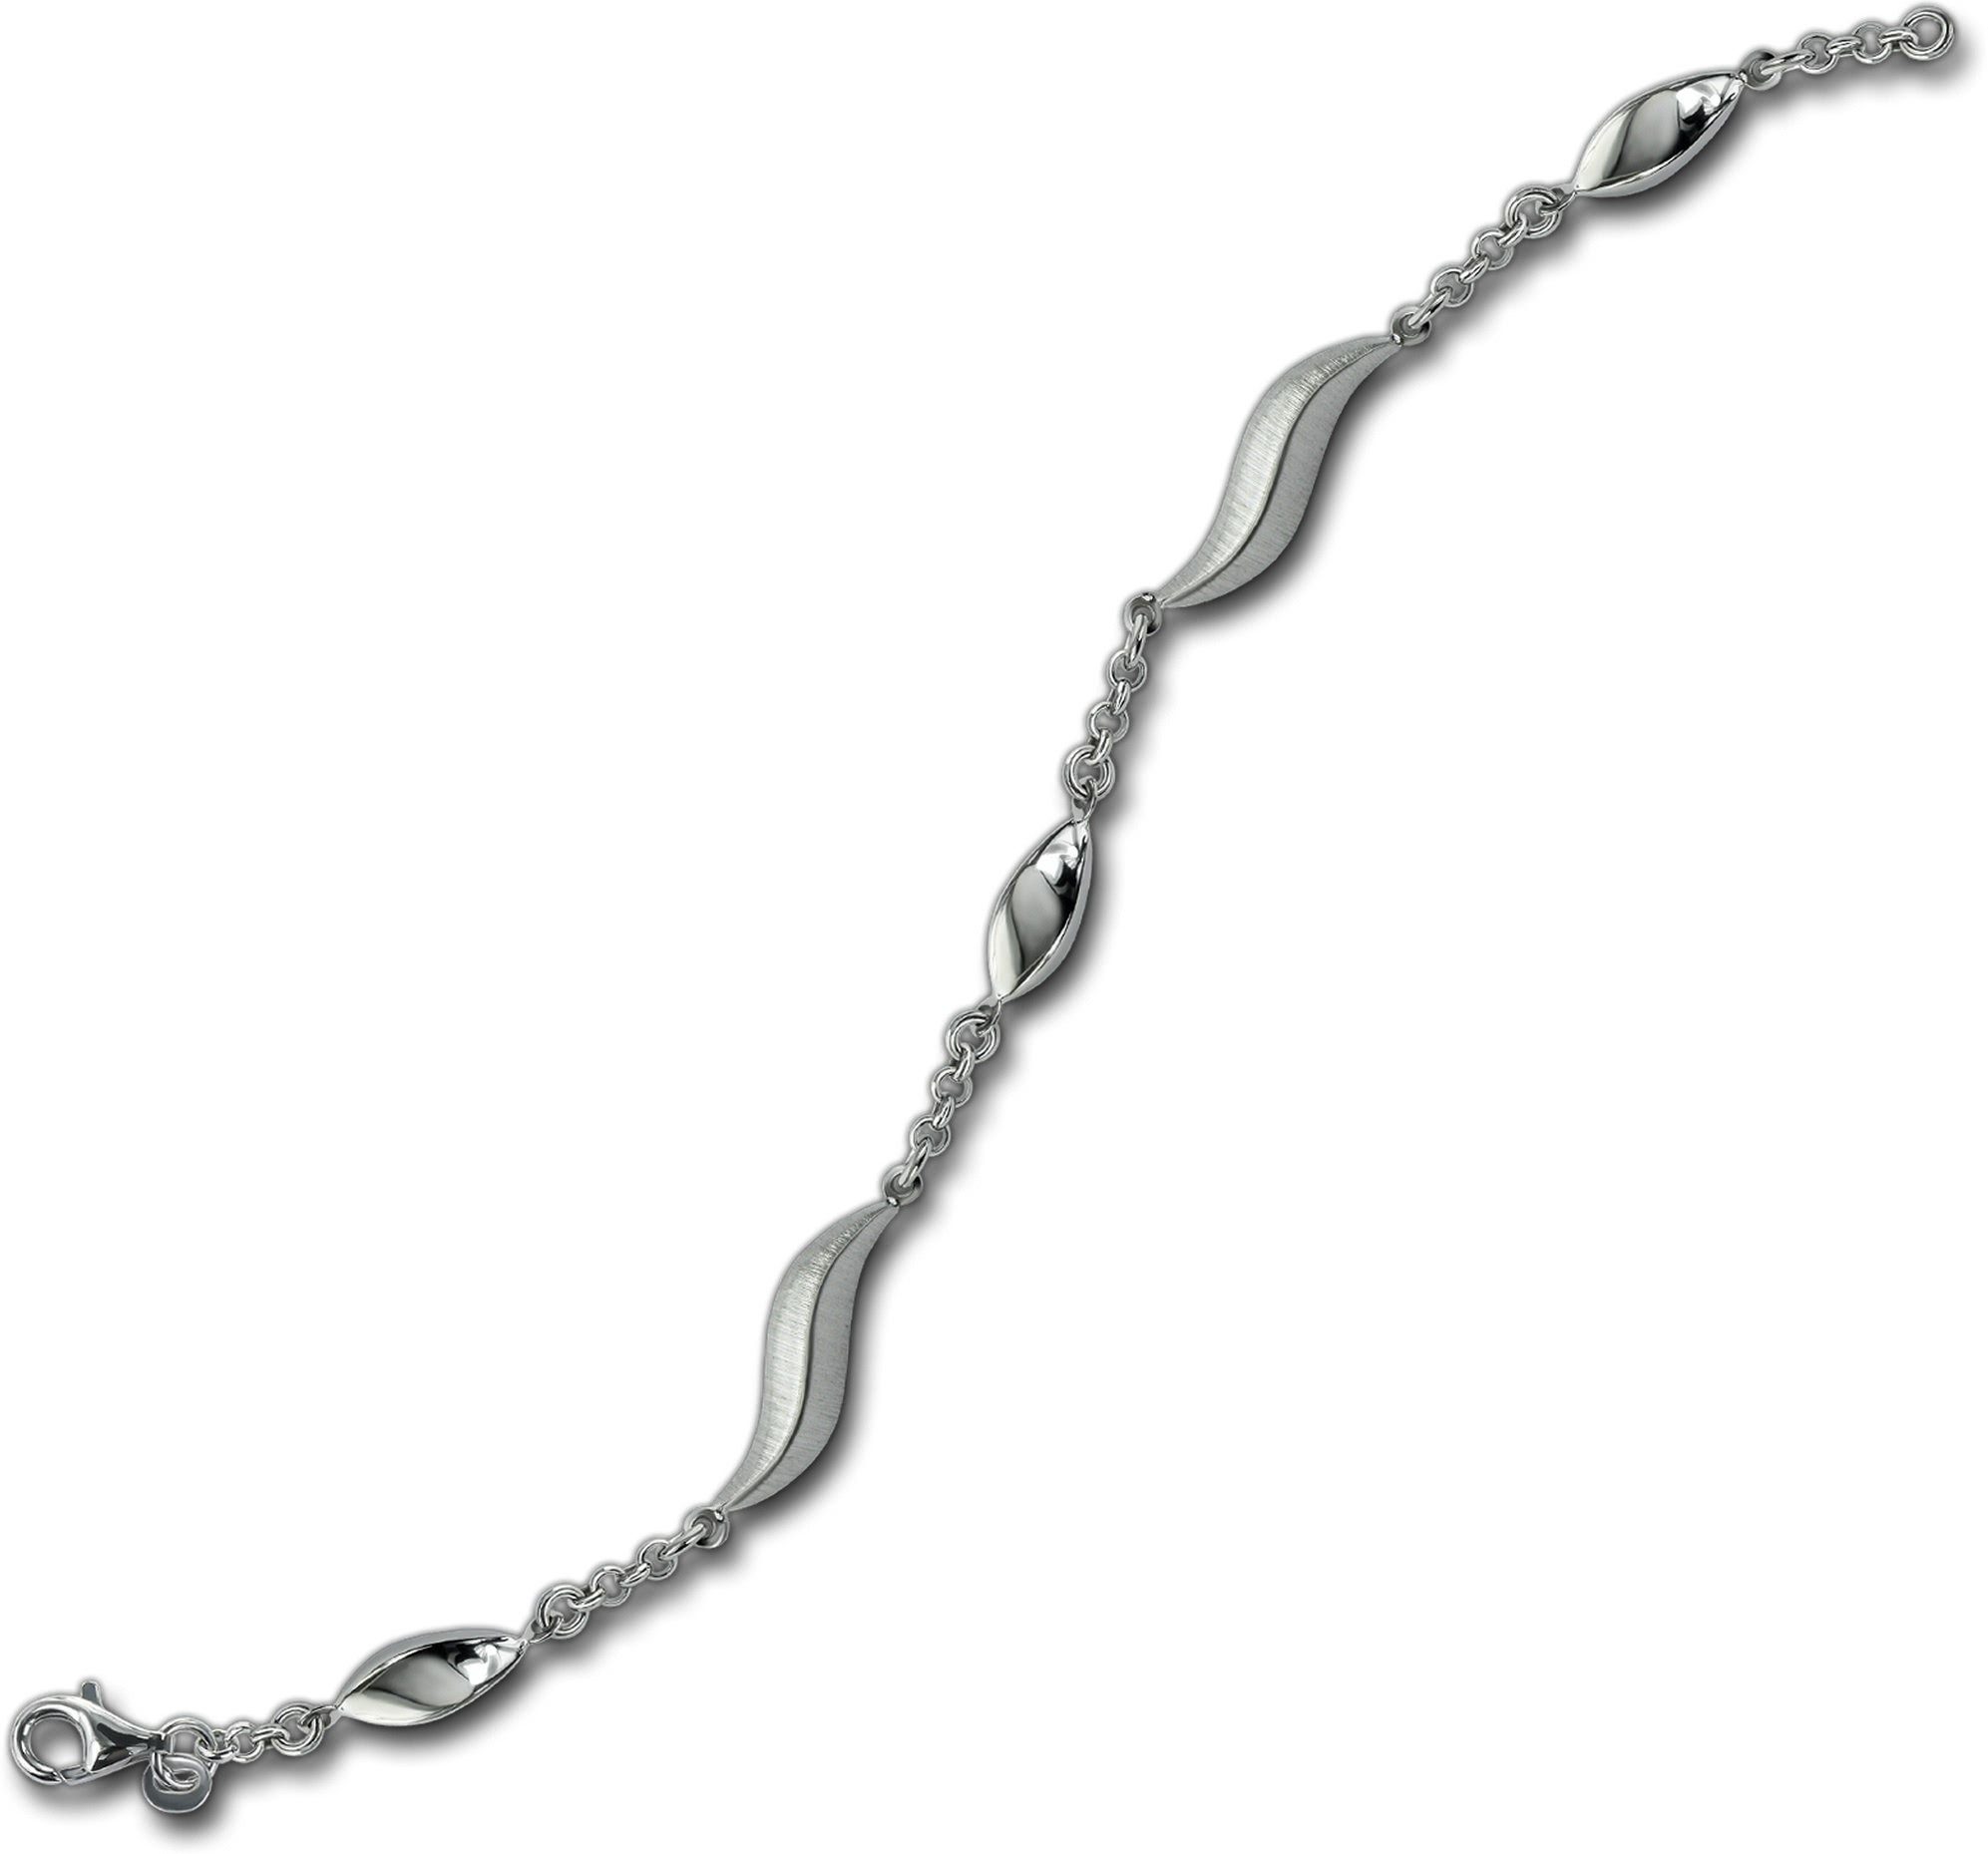 Armband Silberarmband Balia 925 mattiert ca. Armband für Damen Silber (Armband), Balia Silber (Wave) 19,5cm,